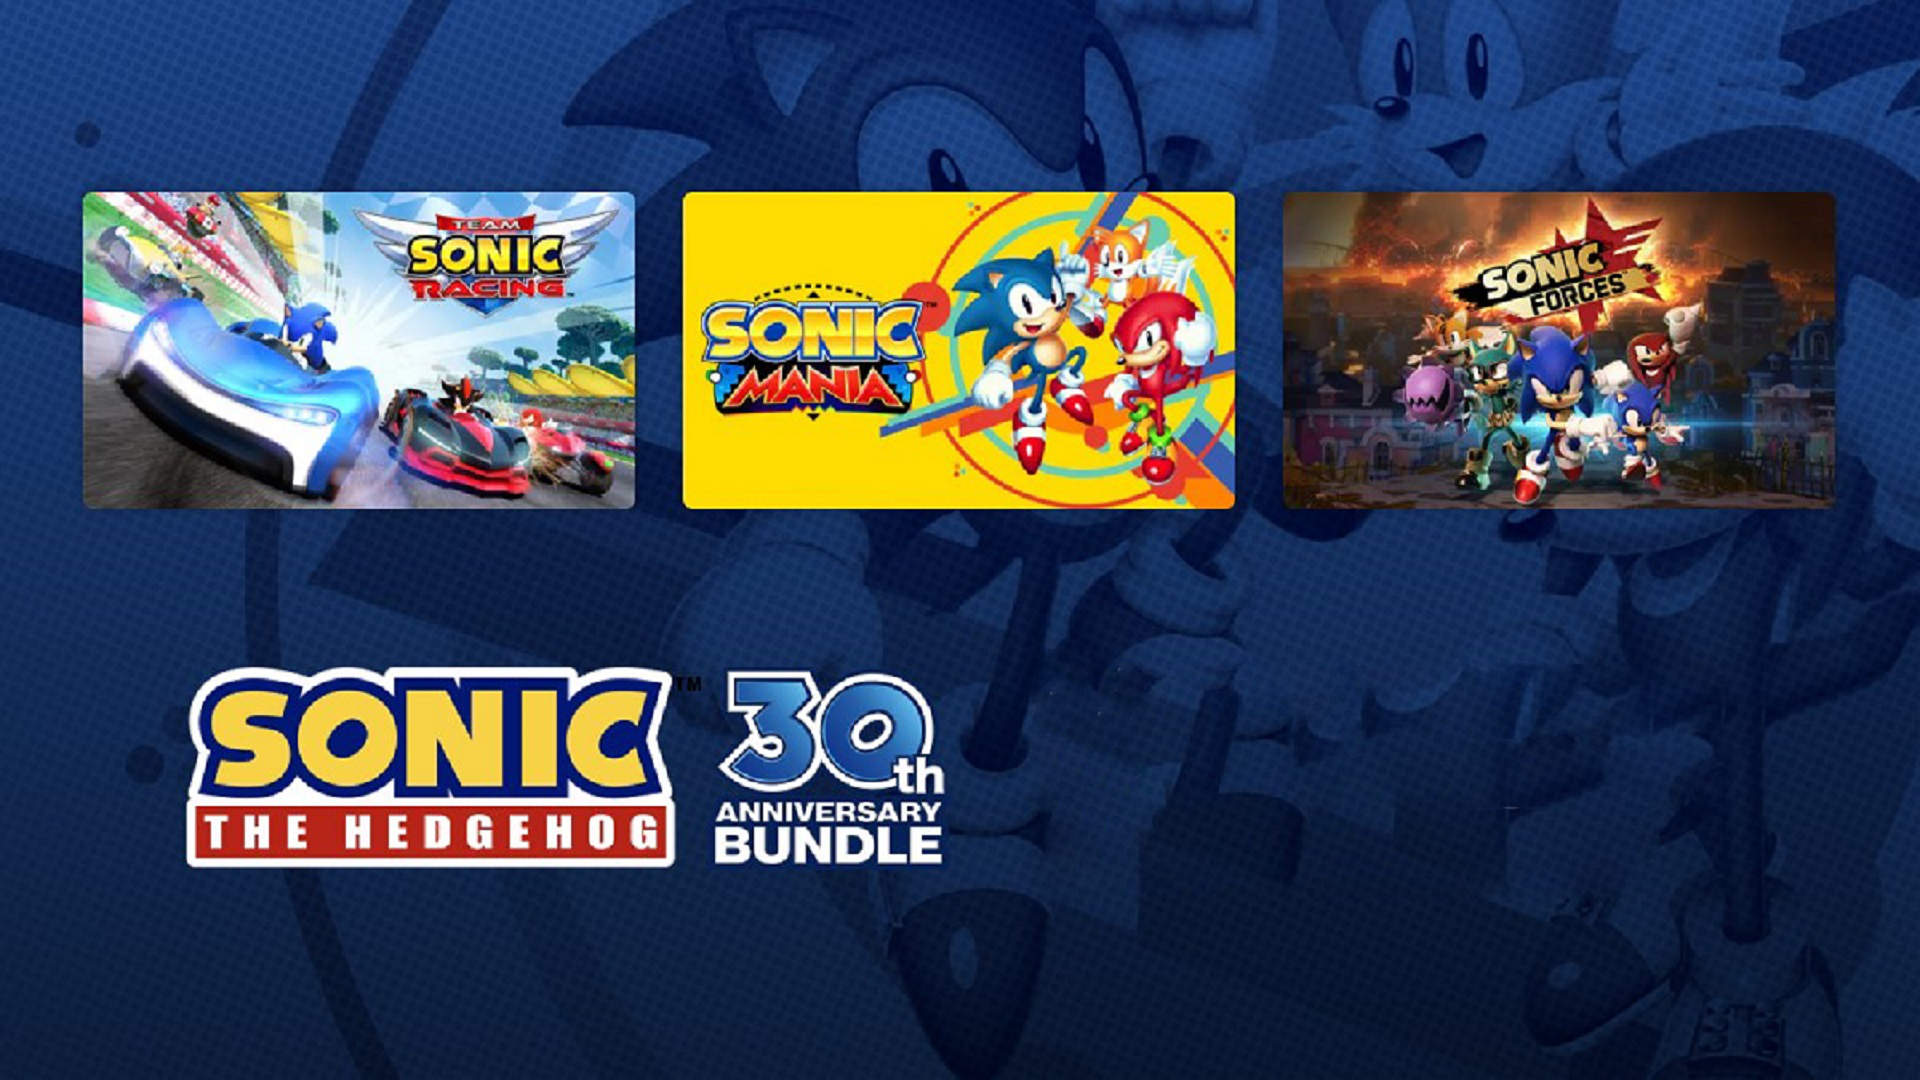 Sonic-Spiele kaufen und Gutes tun